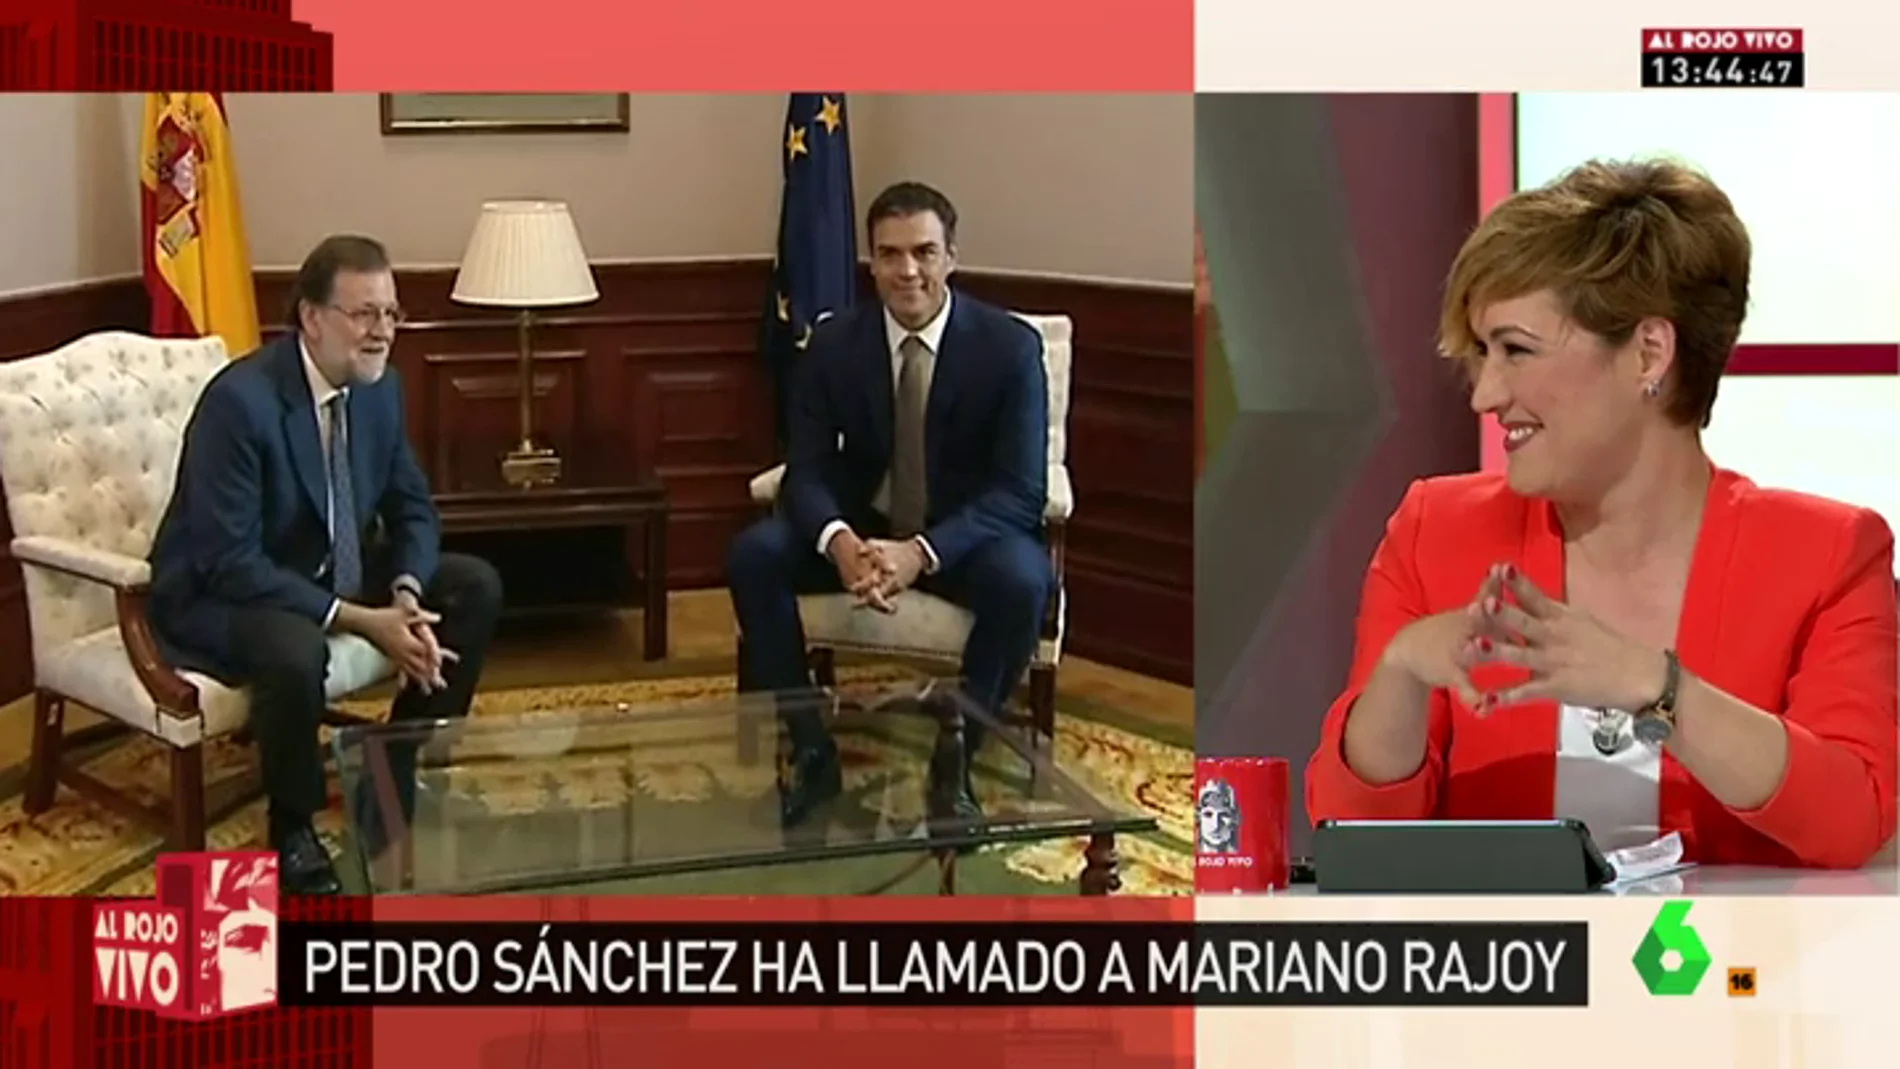 Frame 43.050168 de: Pedro Sánchez llama a Rajoy una semana después de que éste le mandara un SMS preguntándole: "¿Tienes un minuto?"